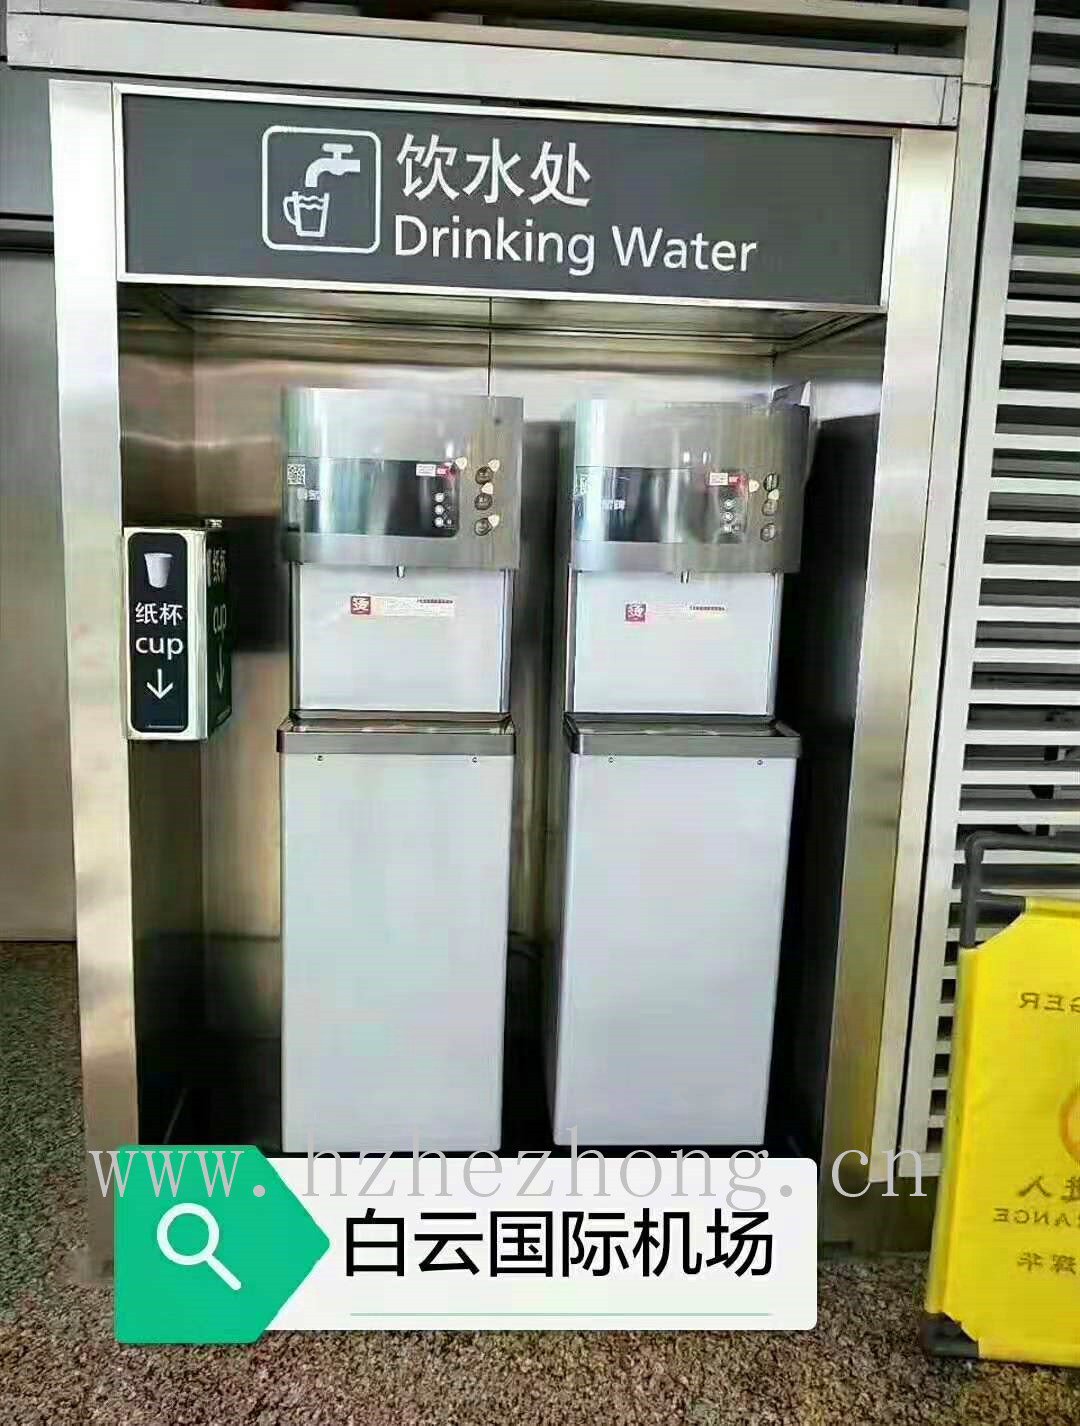 广州白云国际机场使用贺众牌饮水机